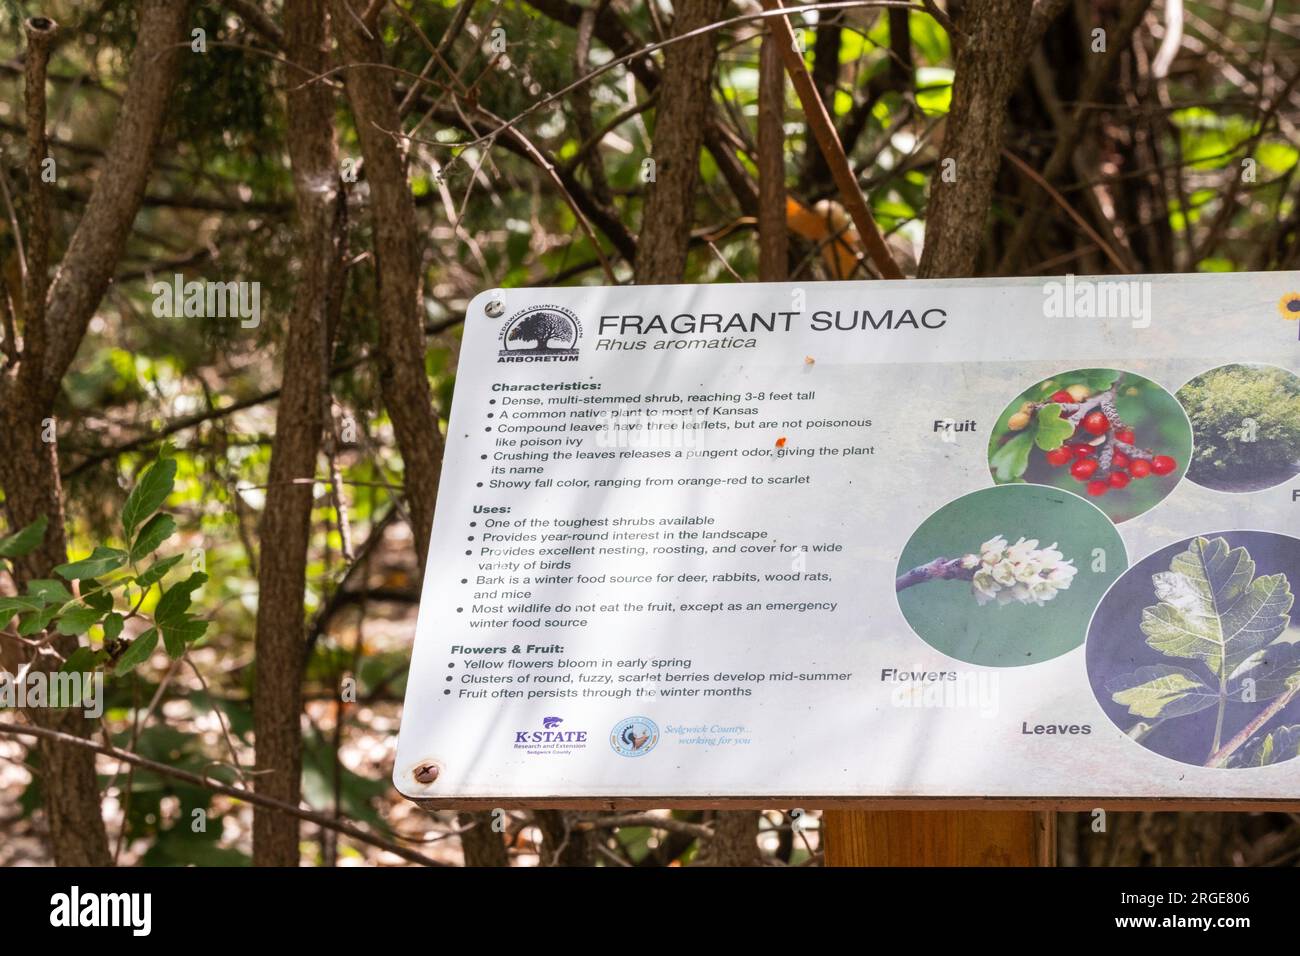 Fragrant Sumac, etichetta di identificazione Rhys aromatica su una passeggiata nella natura nel parco della contea di Sedgwick, Wichita, Kansas, USA. Foto Stock